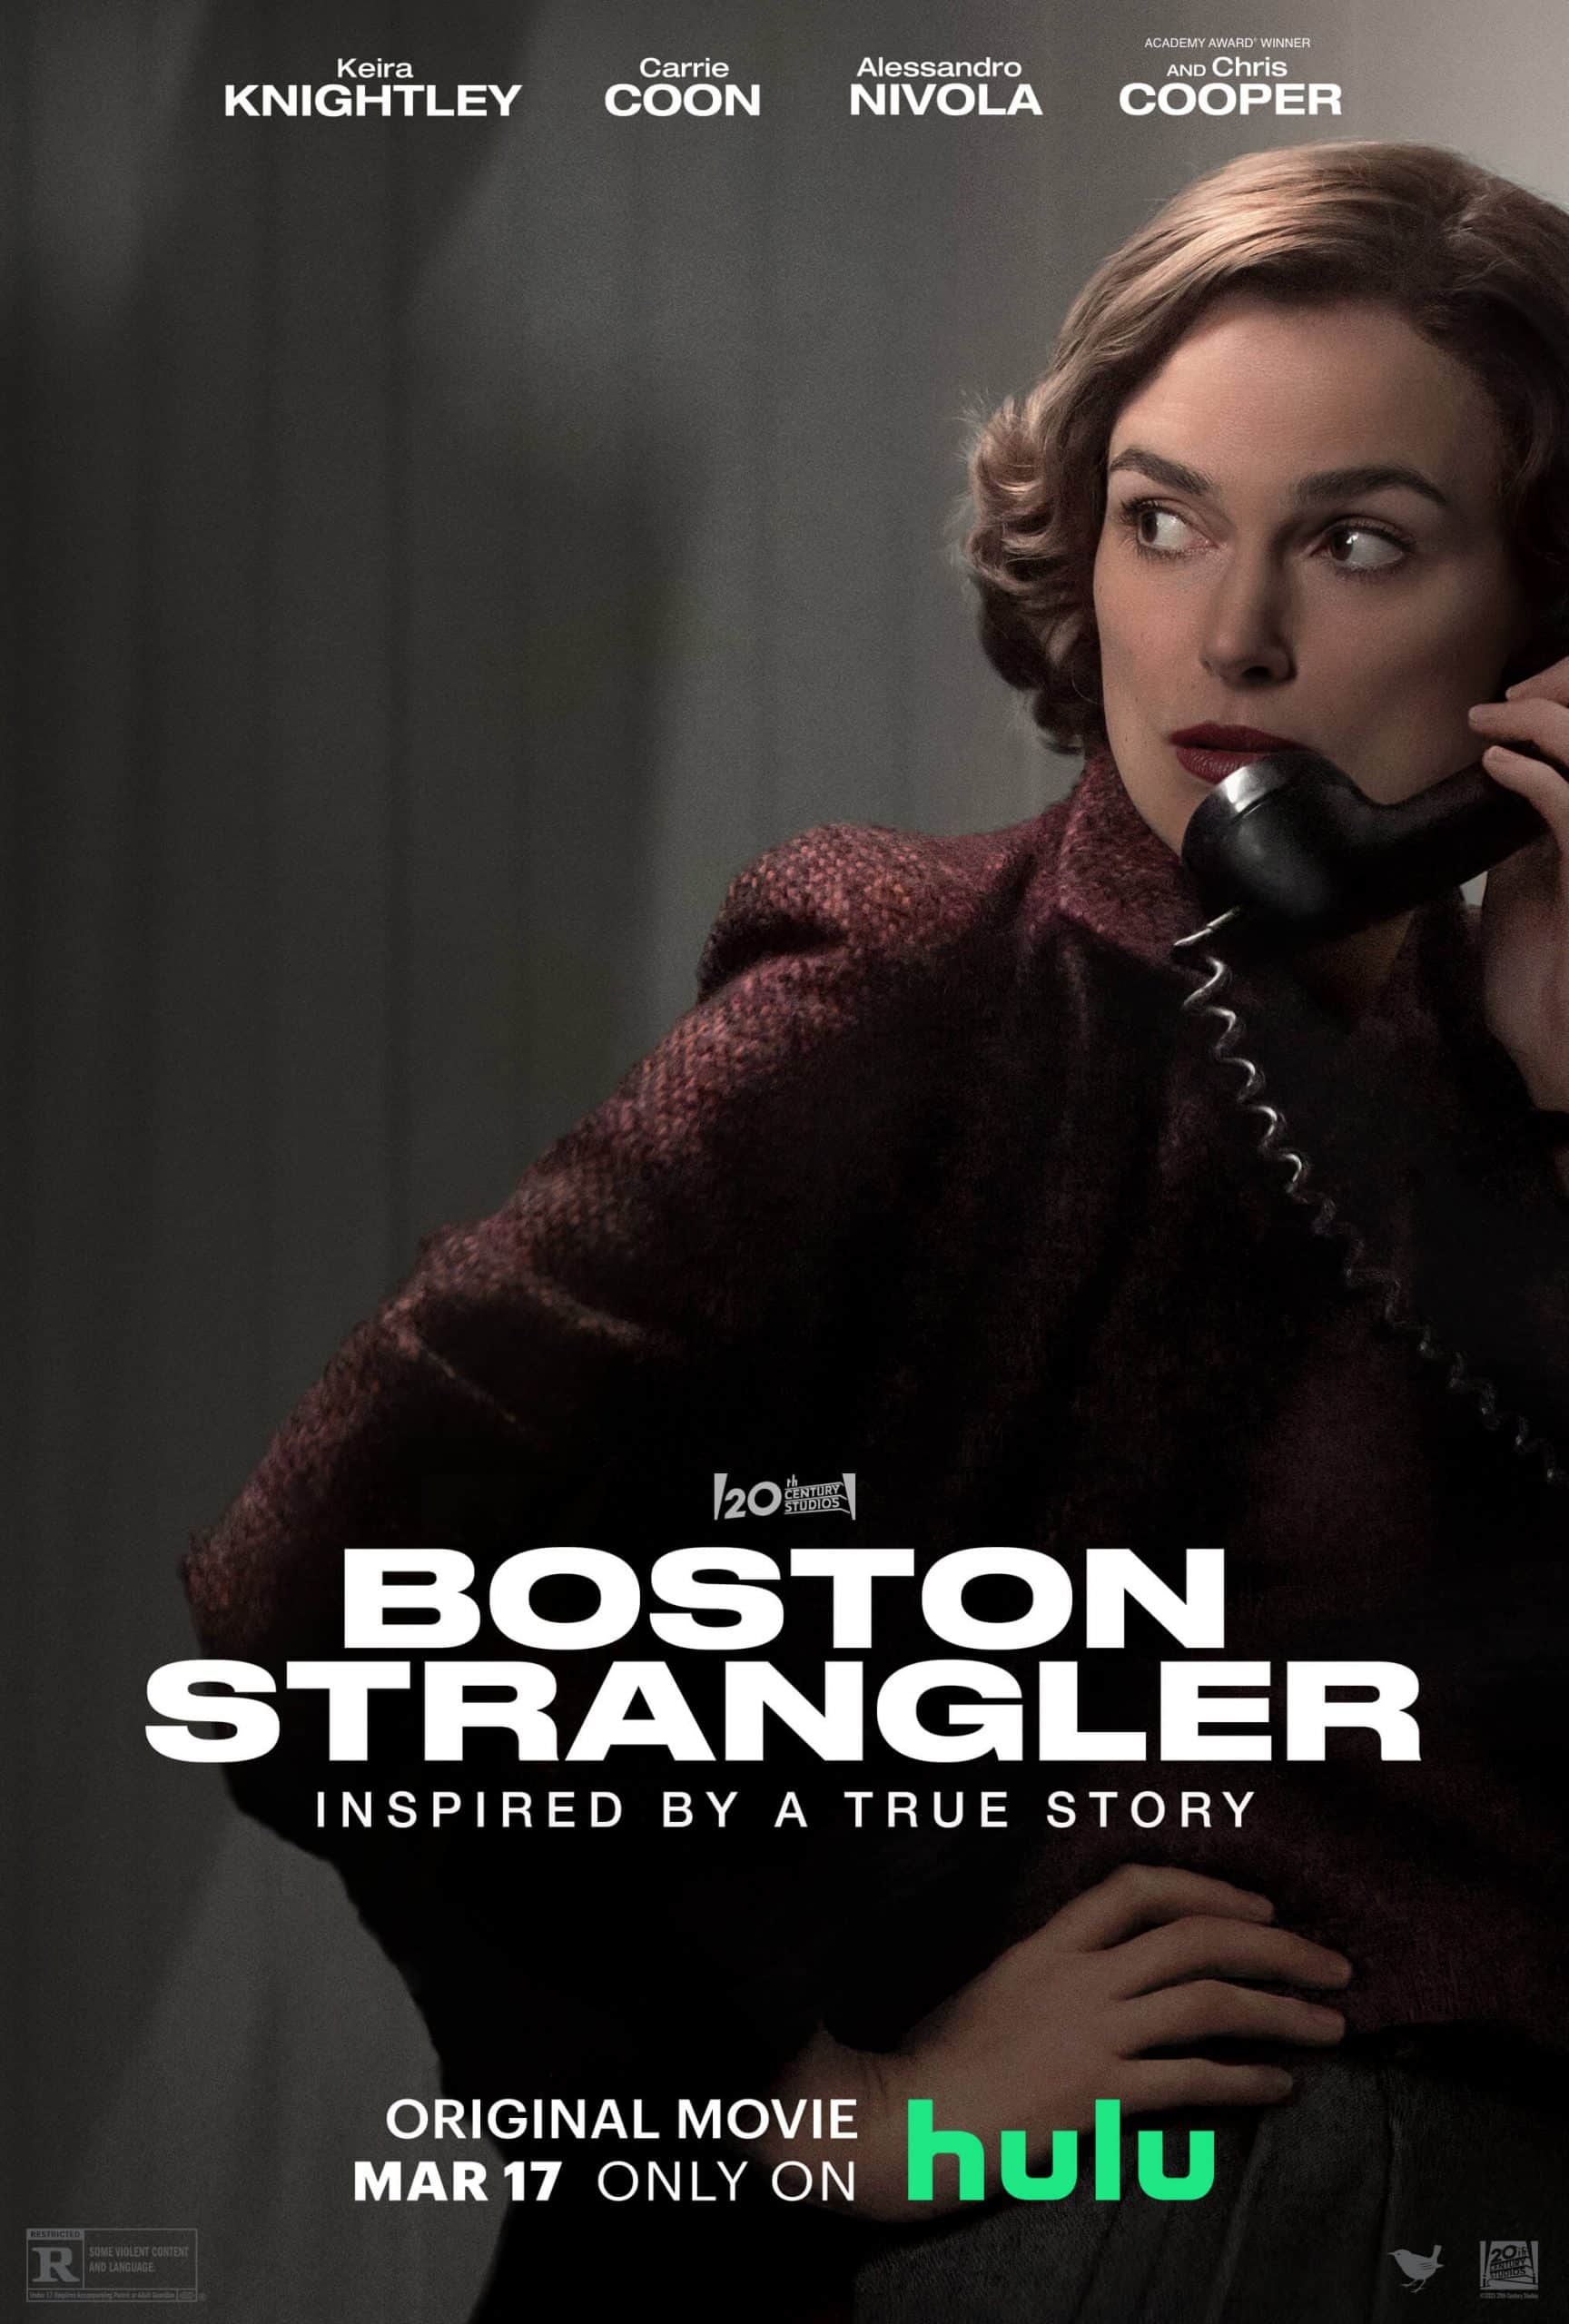 “Boston Strangler” Trailer Released What's On Disney Plus